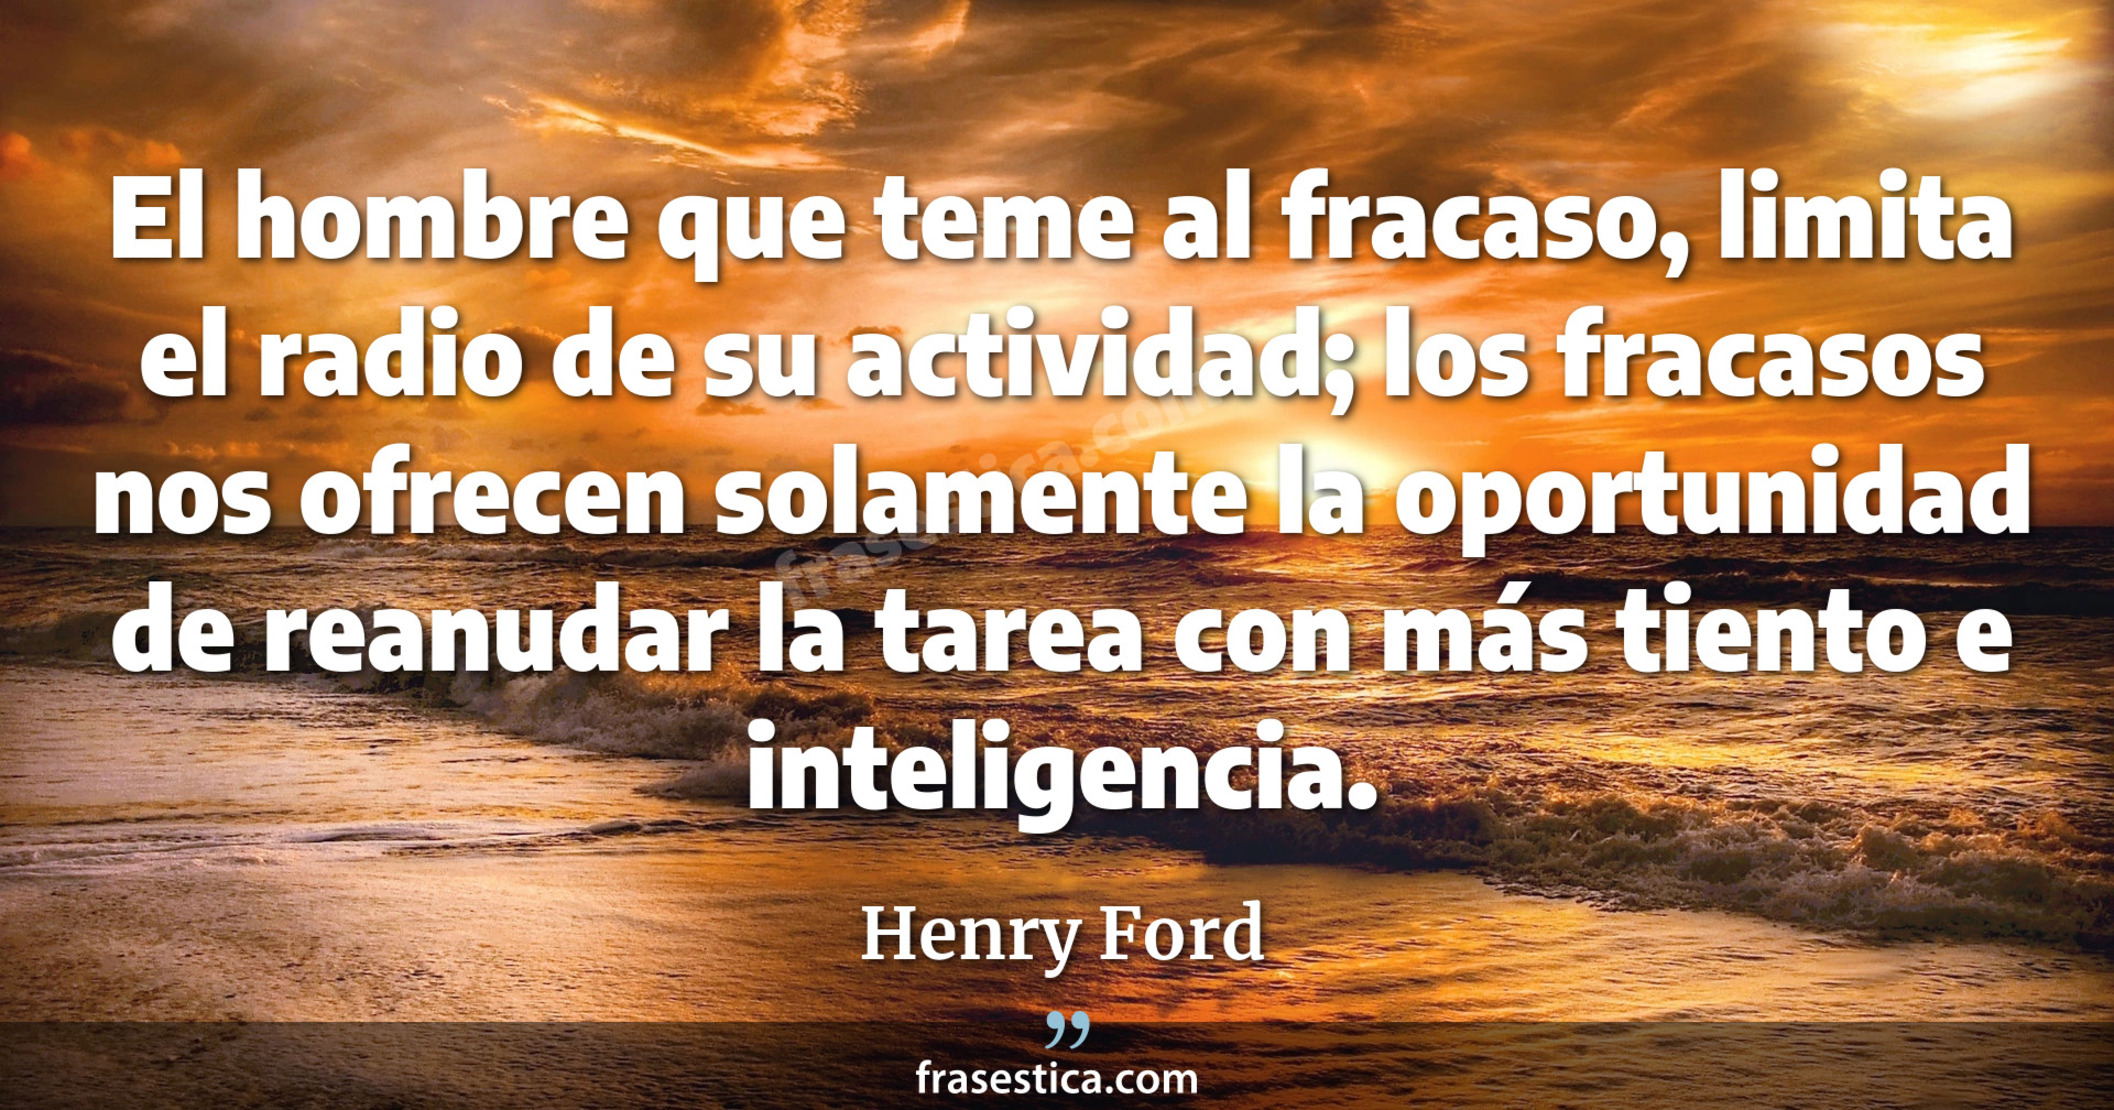 El hombre que teme al fracaso, limita el radio de su actividad; los fracasos nos ofrecen solamente la oportunidad de reanudar la tarea con más tiento e inteligencia. - Henry Ford